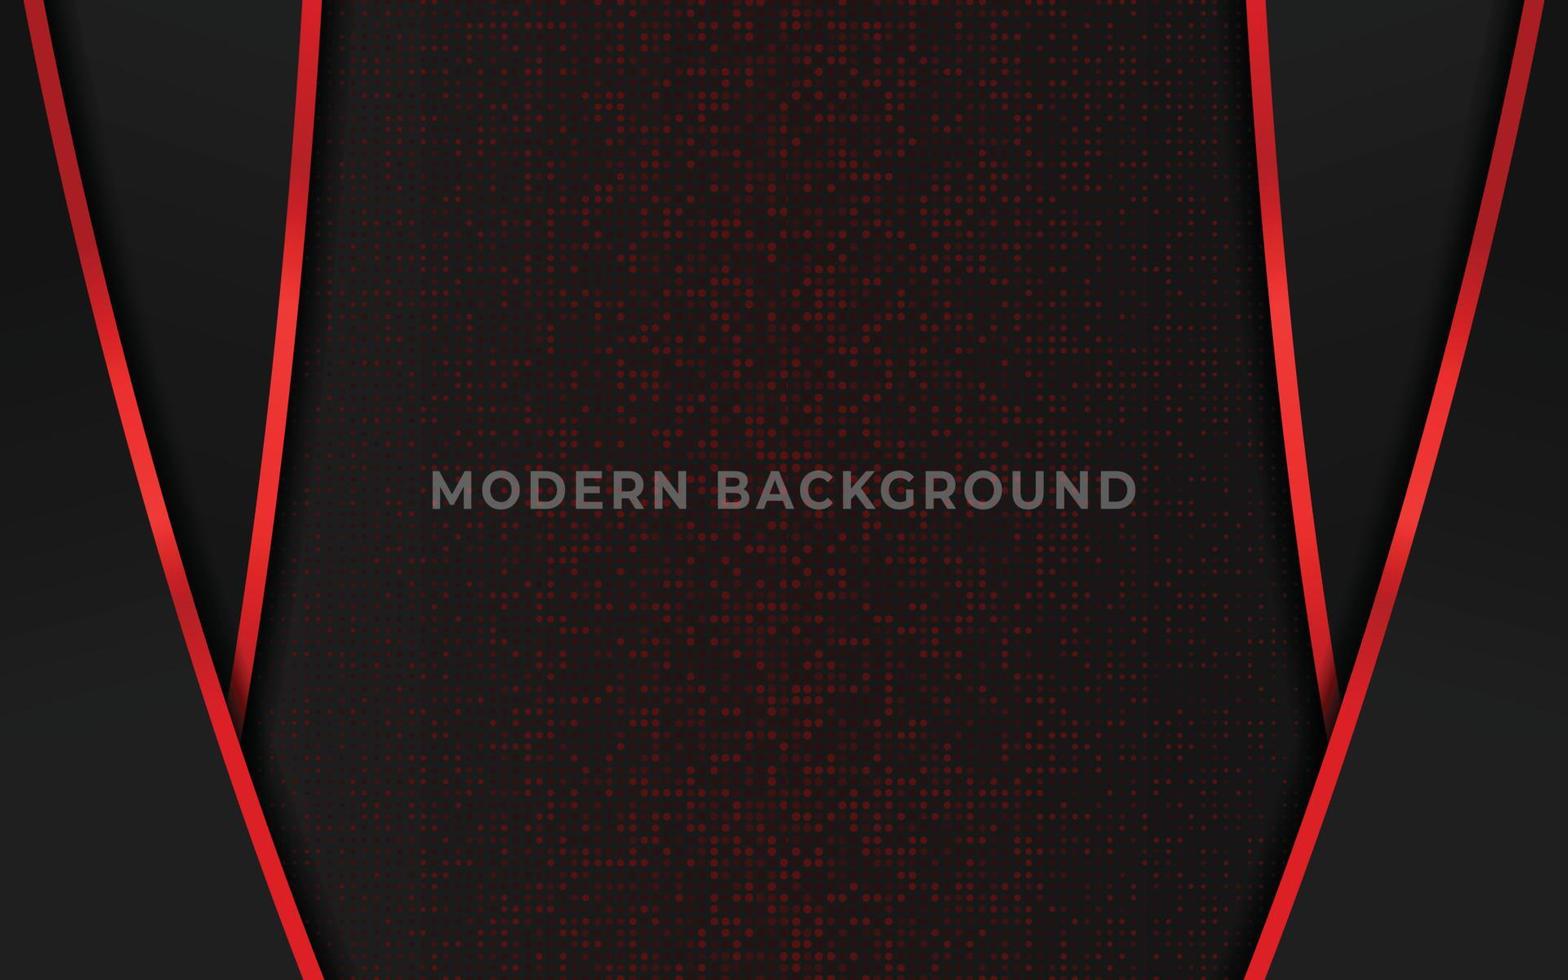 abstracte elegante donkere luxe achtergrond met rood glanzend en glitter element vector